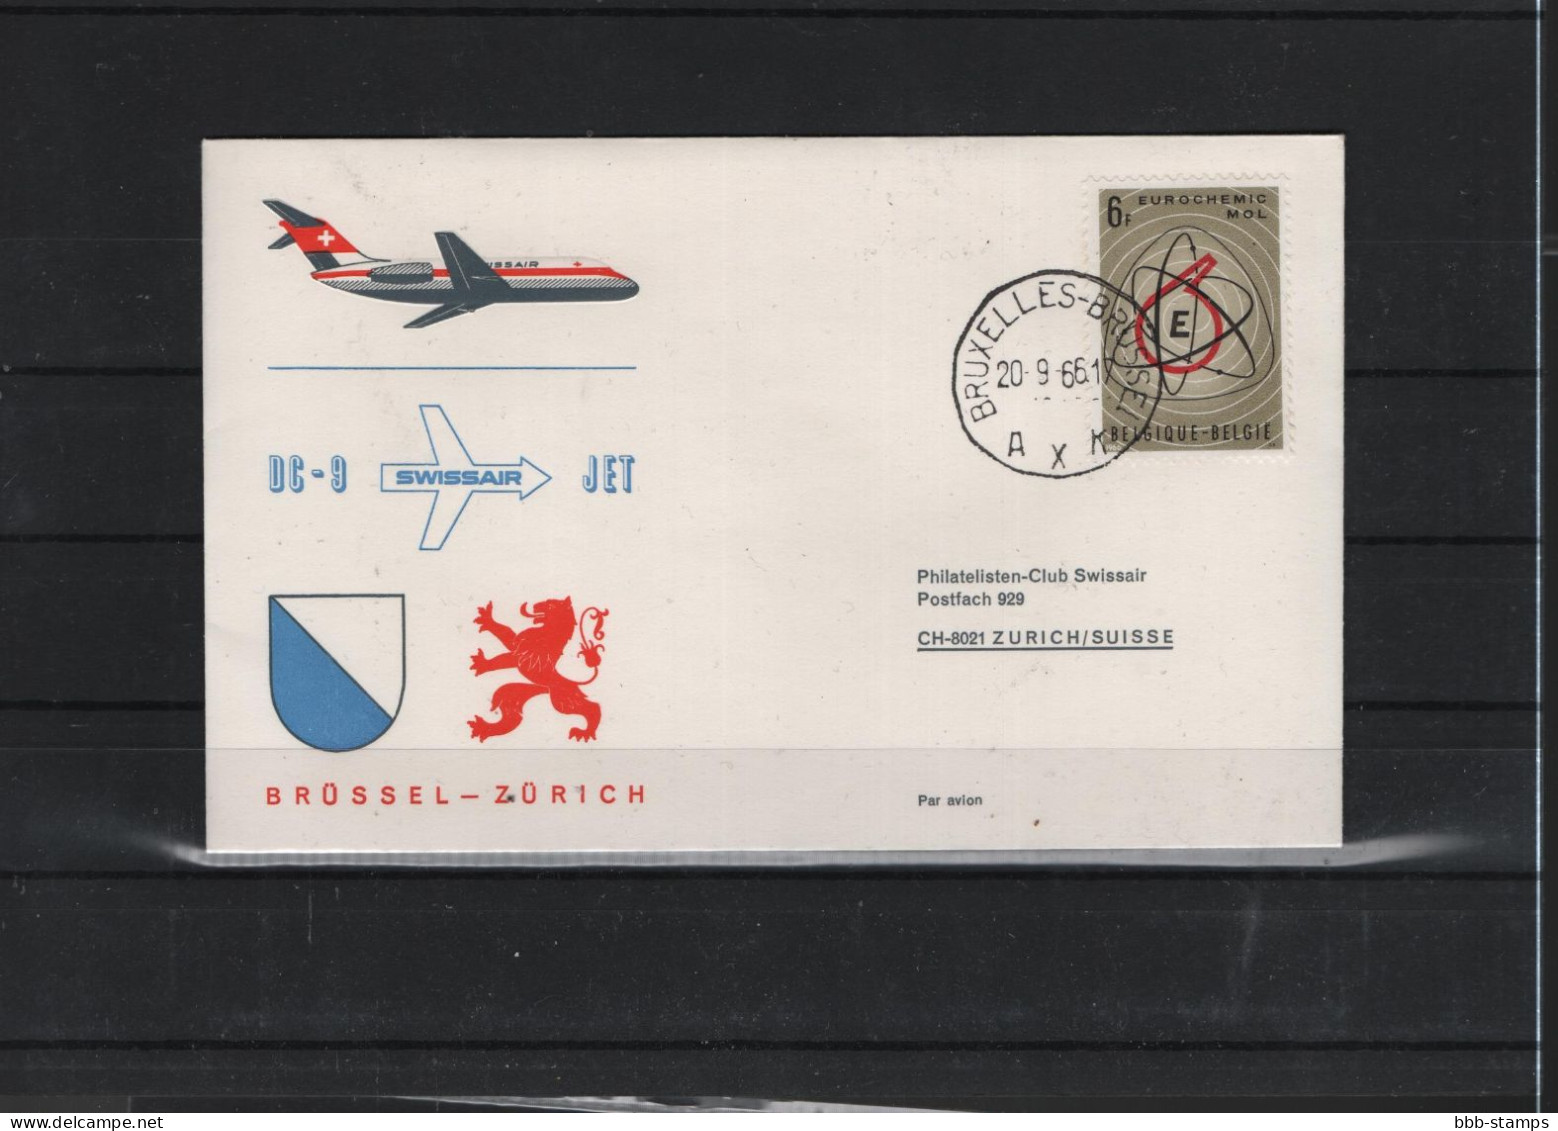 Schweiz Air Mail Swissair  FFC  20.9.2066 Zürich - Brüssel Vv - Erst- U. Sonderflugbriefe